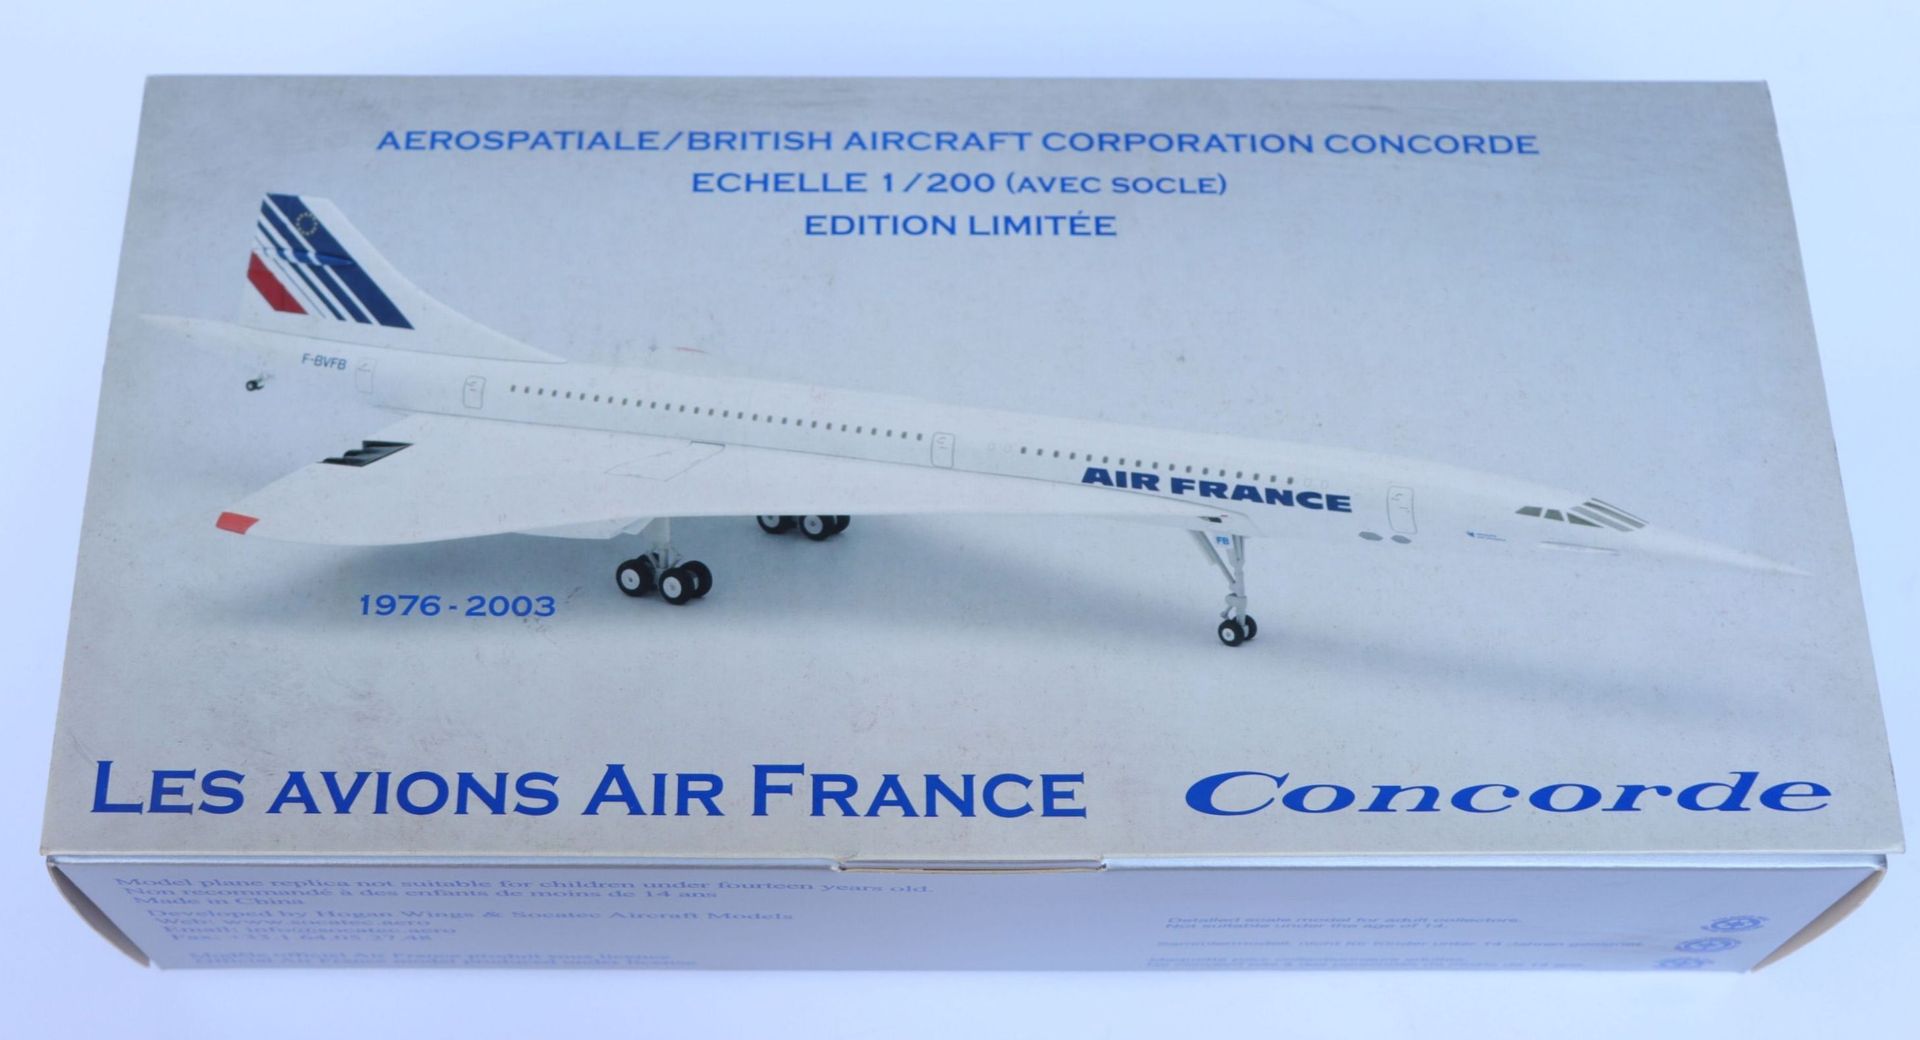 Null 法国康科德航空公司。

大型压铸Socatec协和飞机模型，注册号为F-BVFC。

比例为1/200。

法航博物馆限量版。

全新的原包装盒。

&hellip;